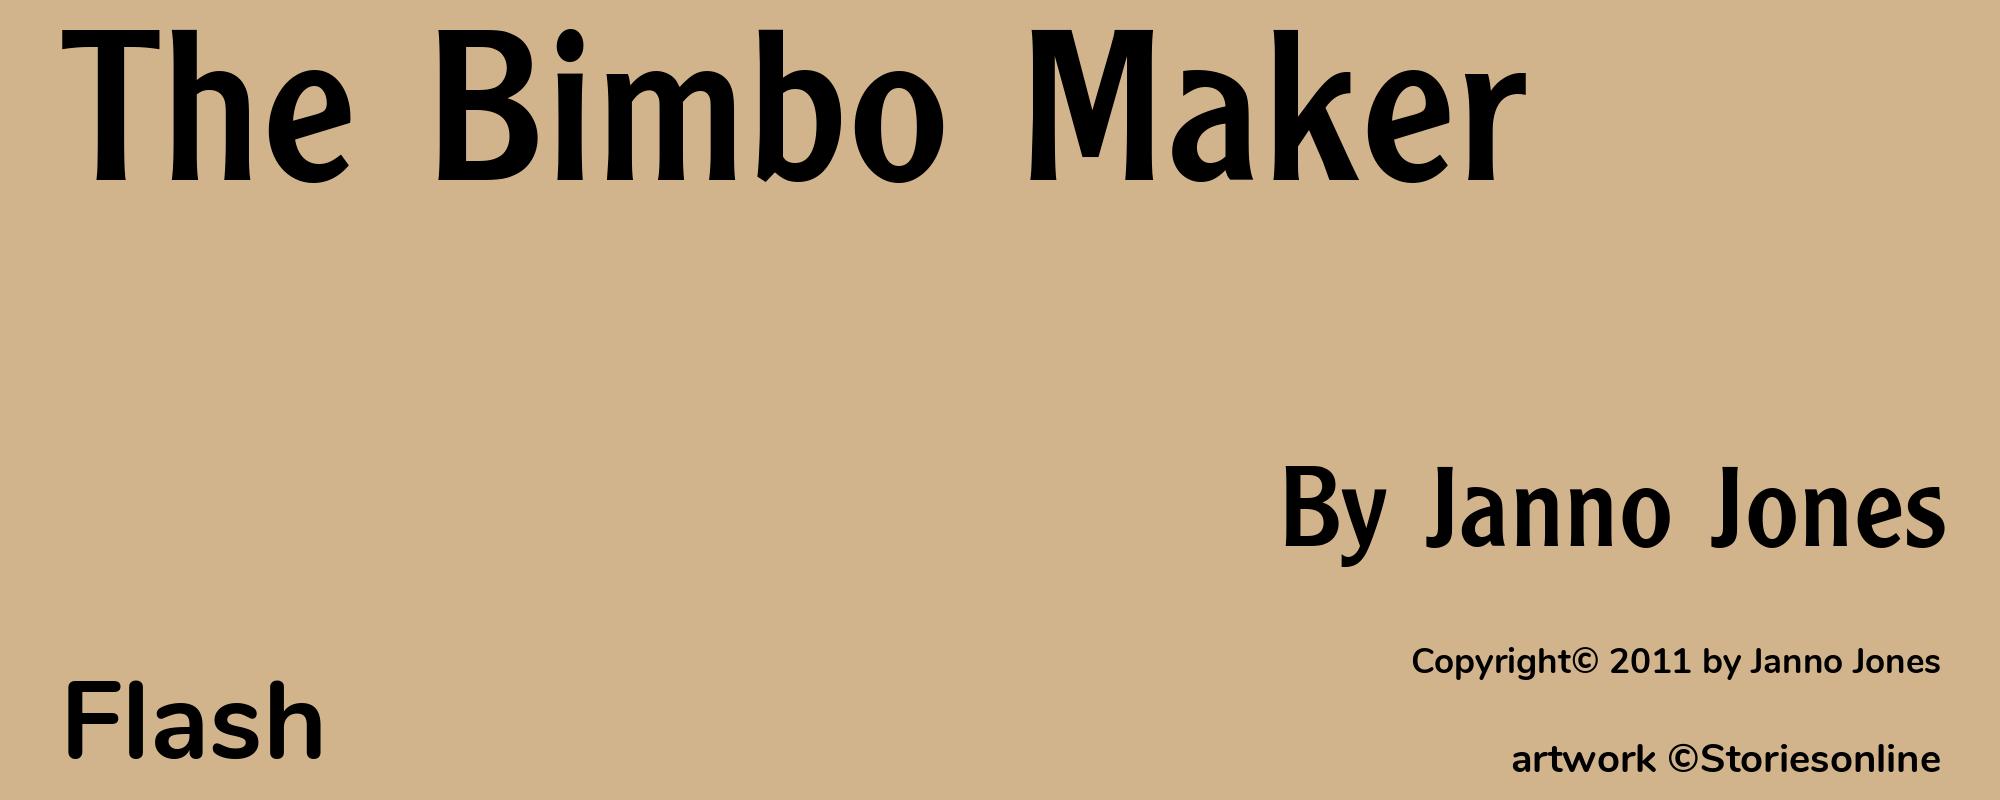 The Bimbo Maker - Cover